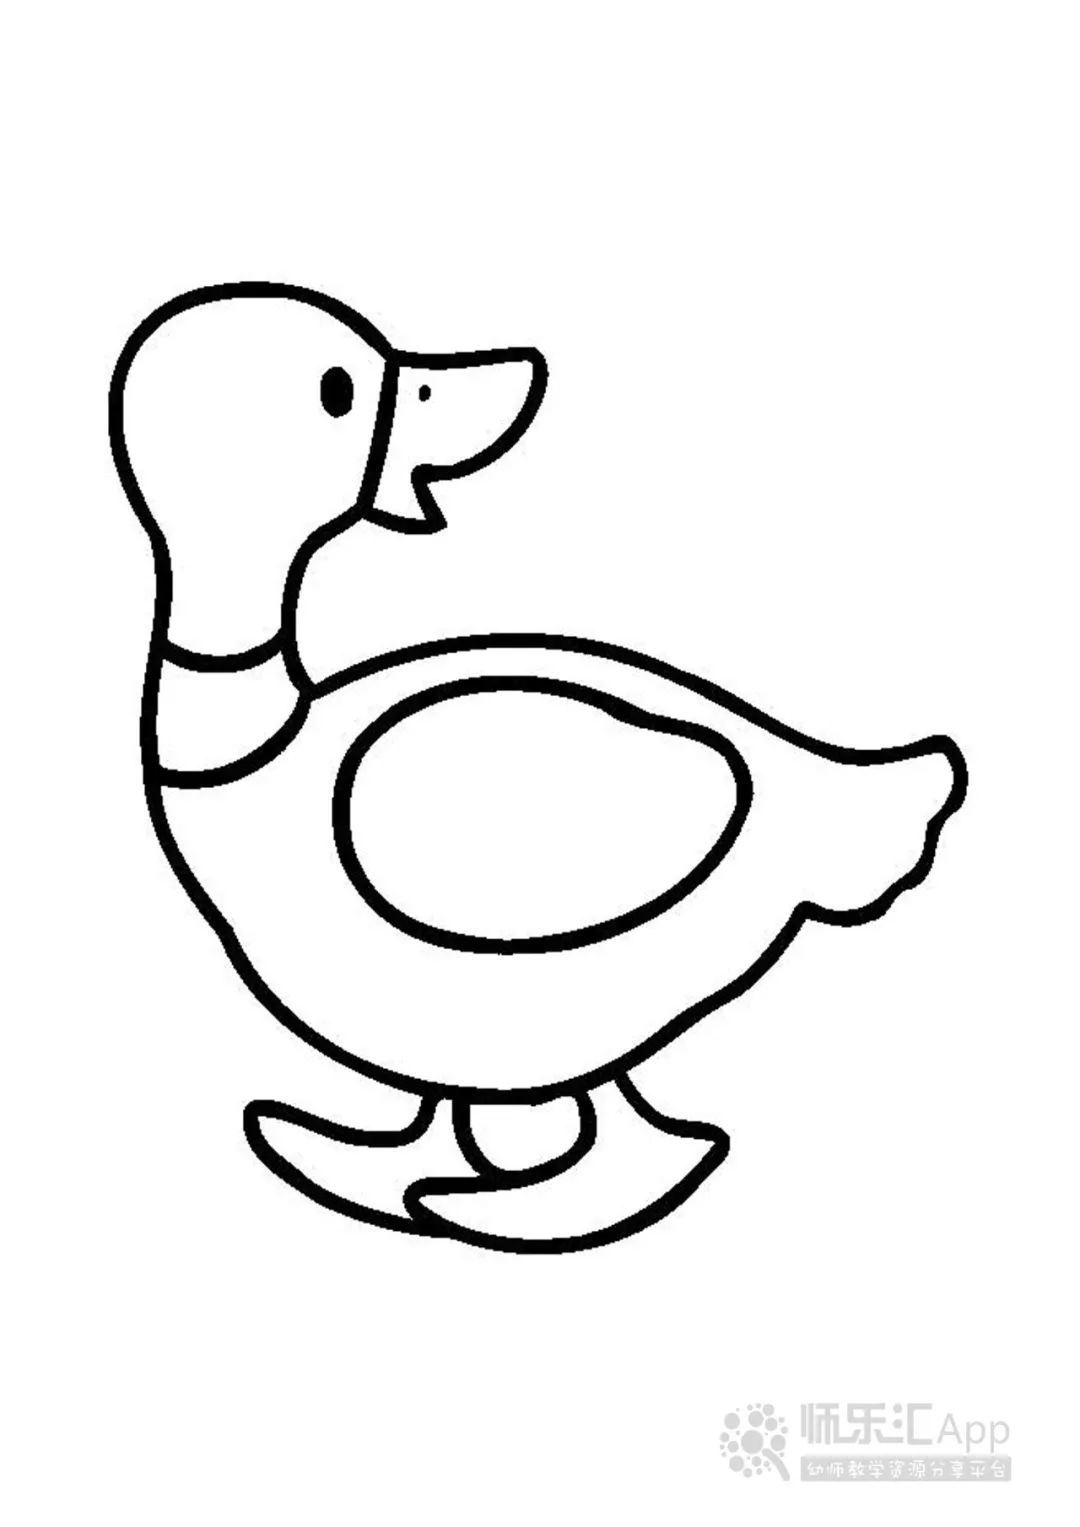 简单漂亮动物简笔画小鸭子的步骤图片（简笔画大全图案） - 有点网 - 好手艺